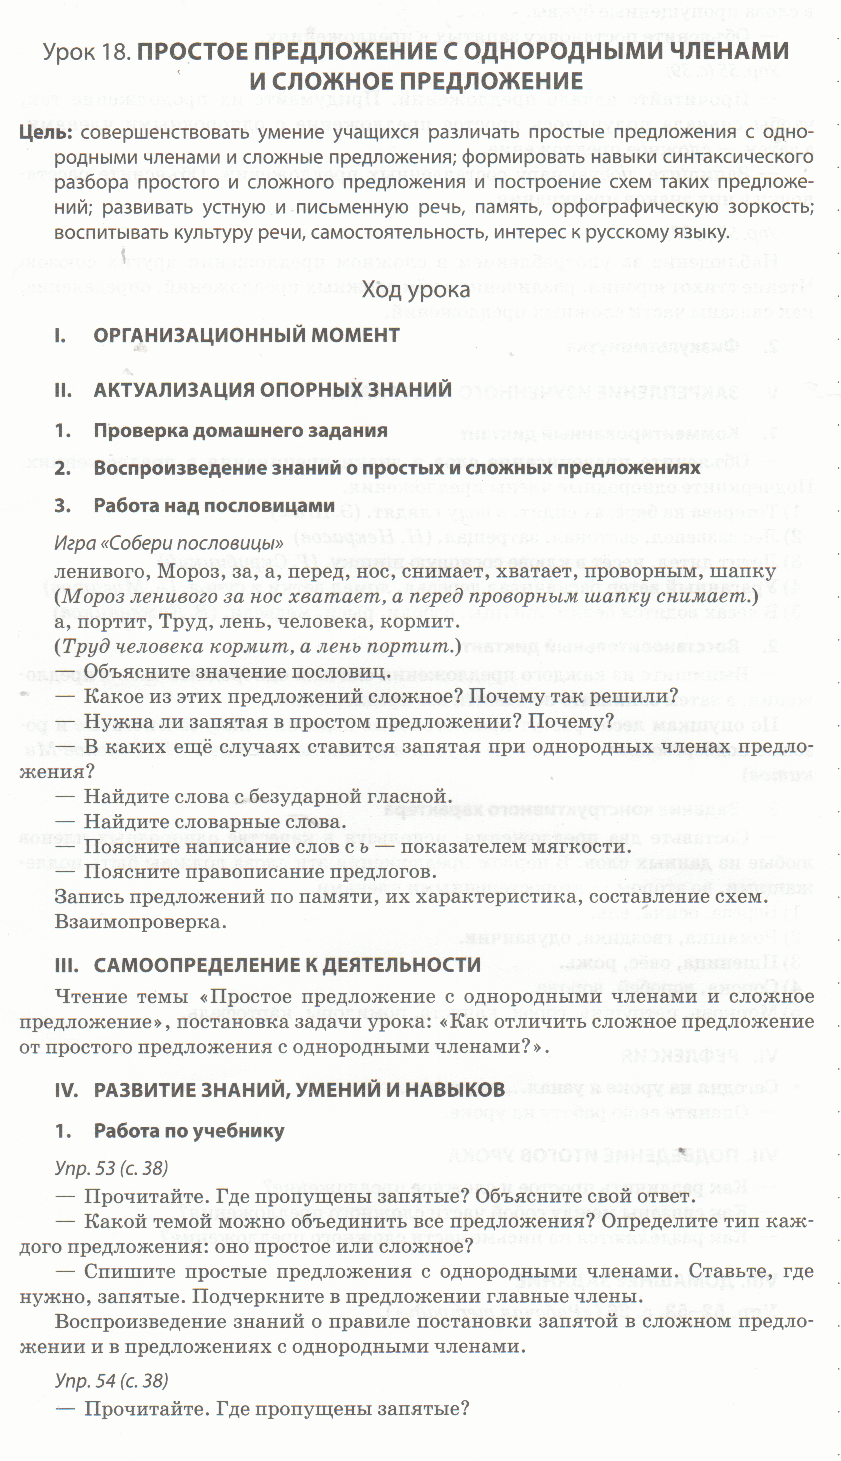 Урок по русскому языку для 4 класса Простое предложение с однородными членами и сложное предложение